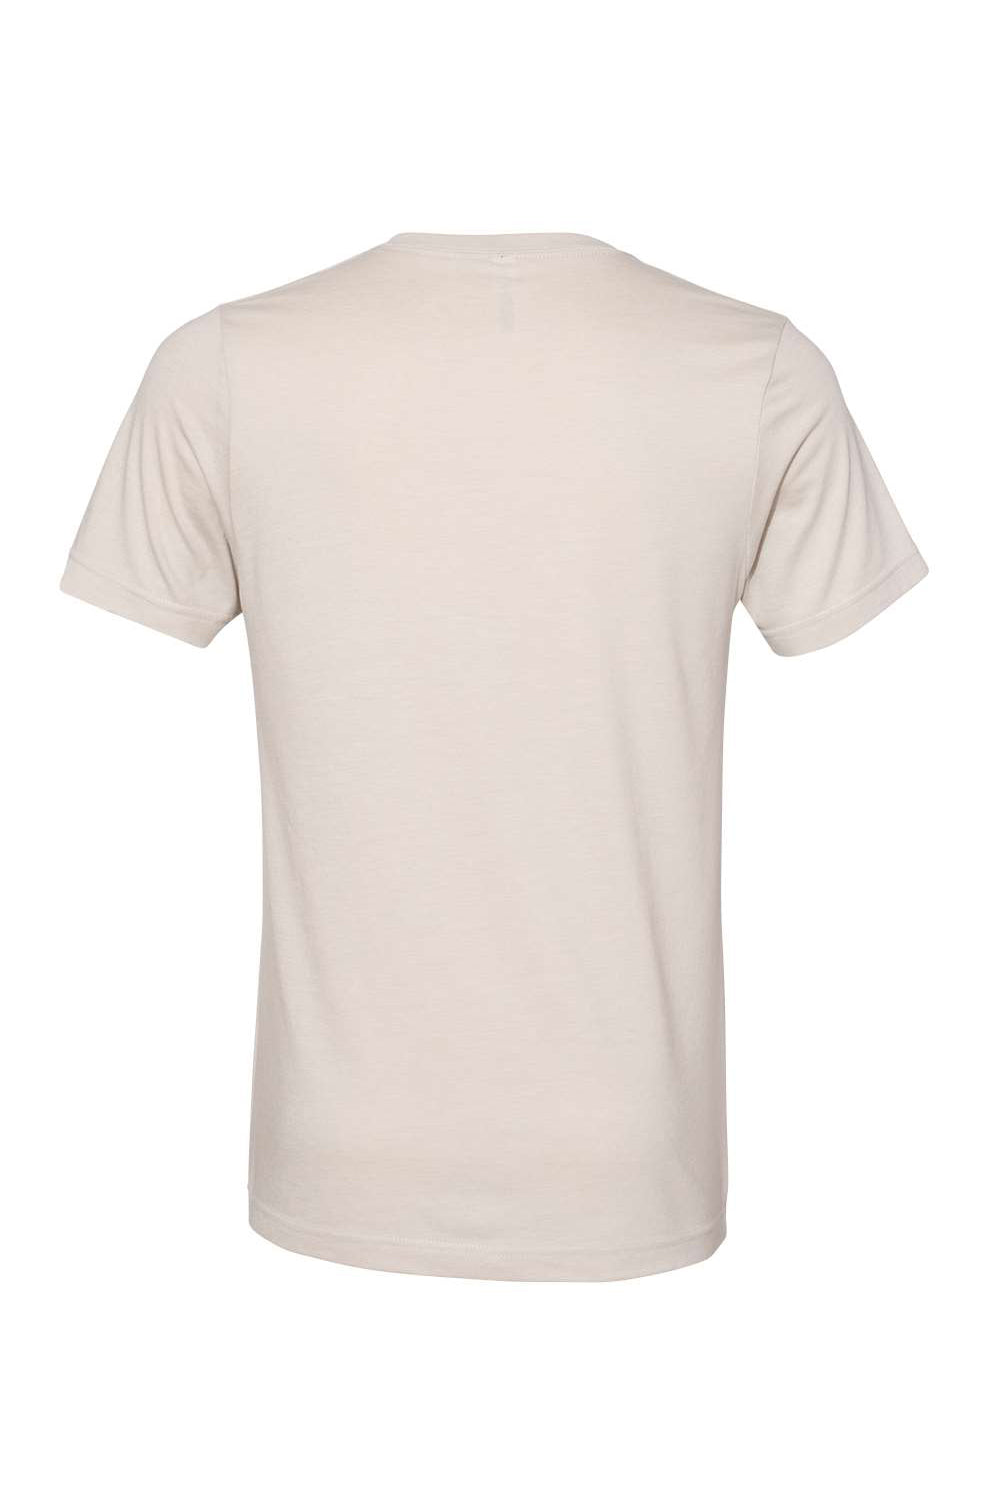 Bella + Canvas BC3005CVC Mens CVC Short Sleeve V-Neck T-Shirt Heather Dust Flat Back